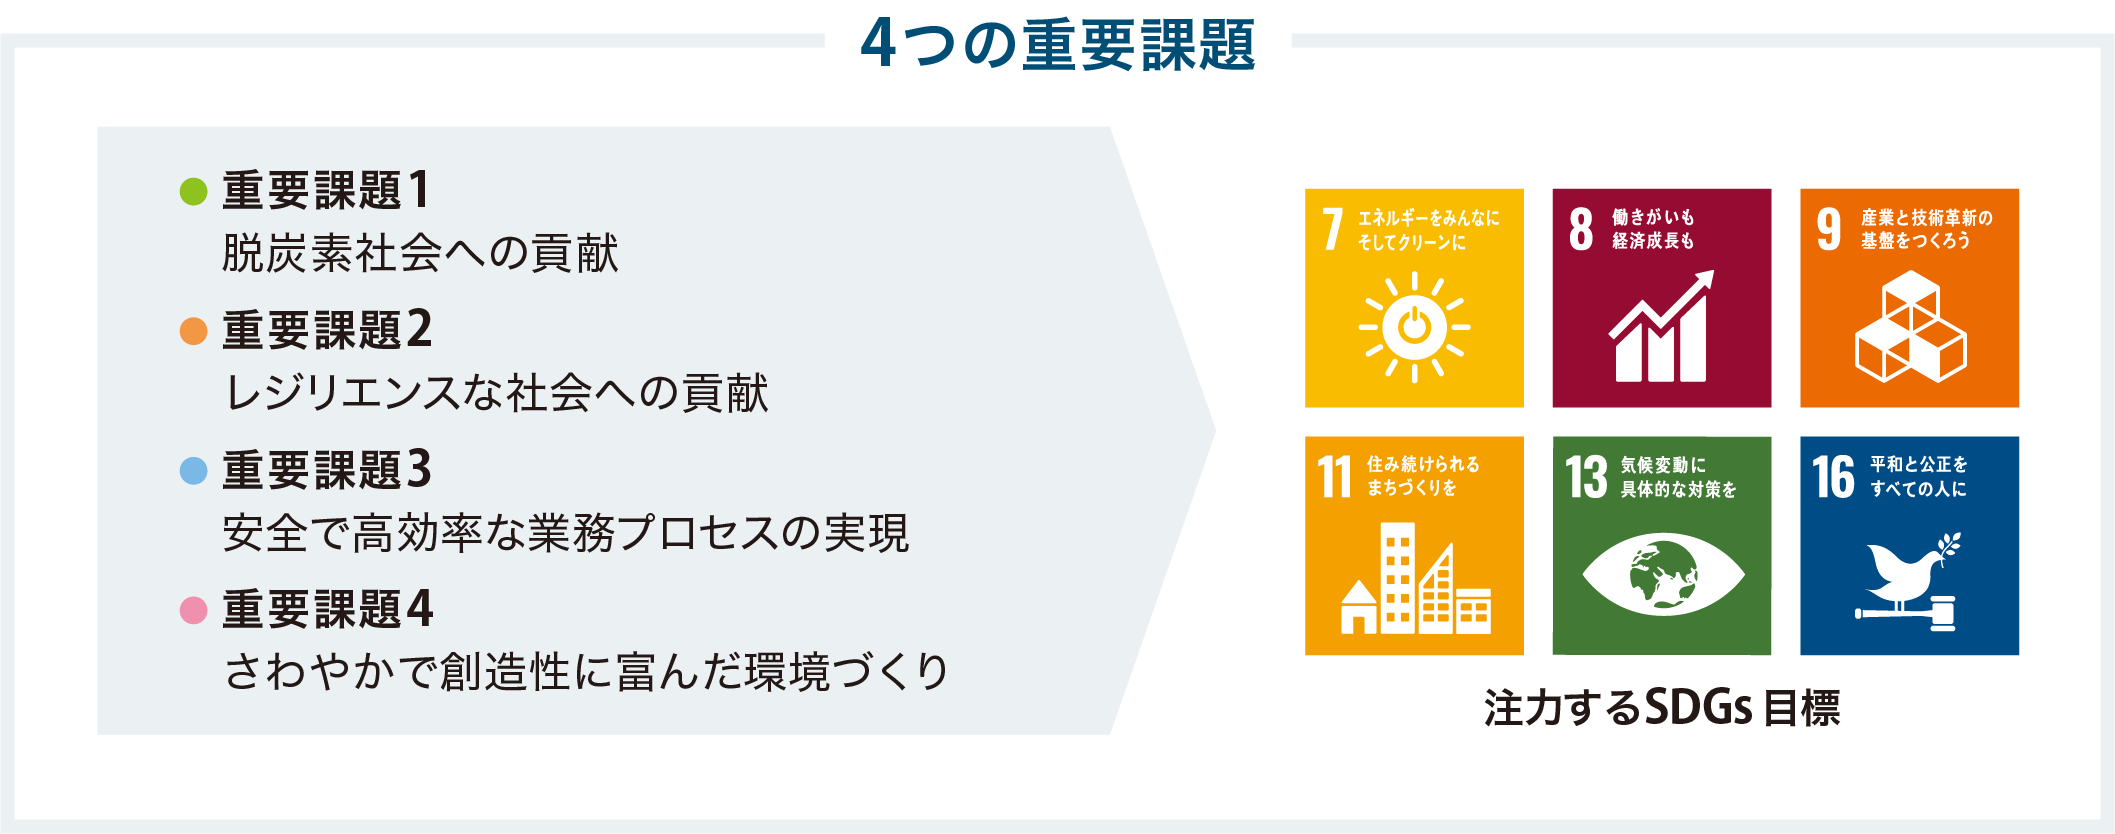 4つの重要課題 重要課題1 脱炭素社会への貢献 重要課題2 レジリエンスな社会への貢献 重要課題3 安全で高効率な業務プロセスの実現 重要課題4 さわやかで創造性に富んだ環境づくり